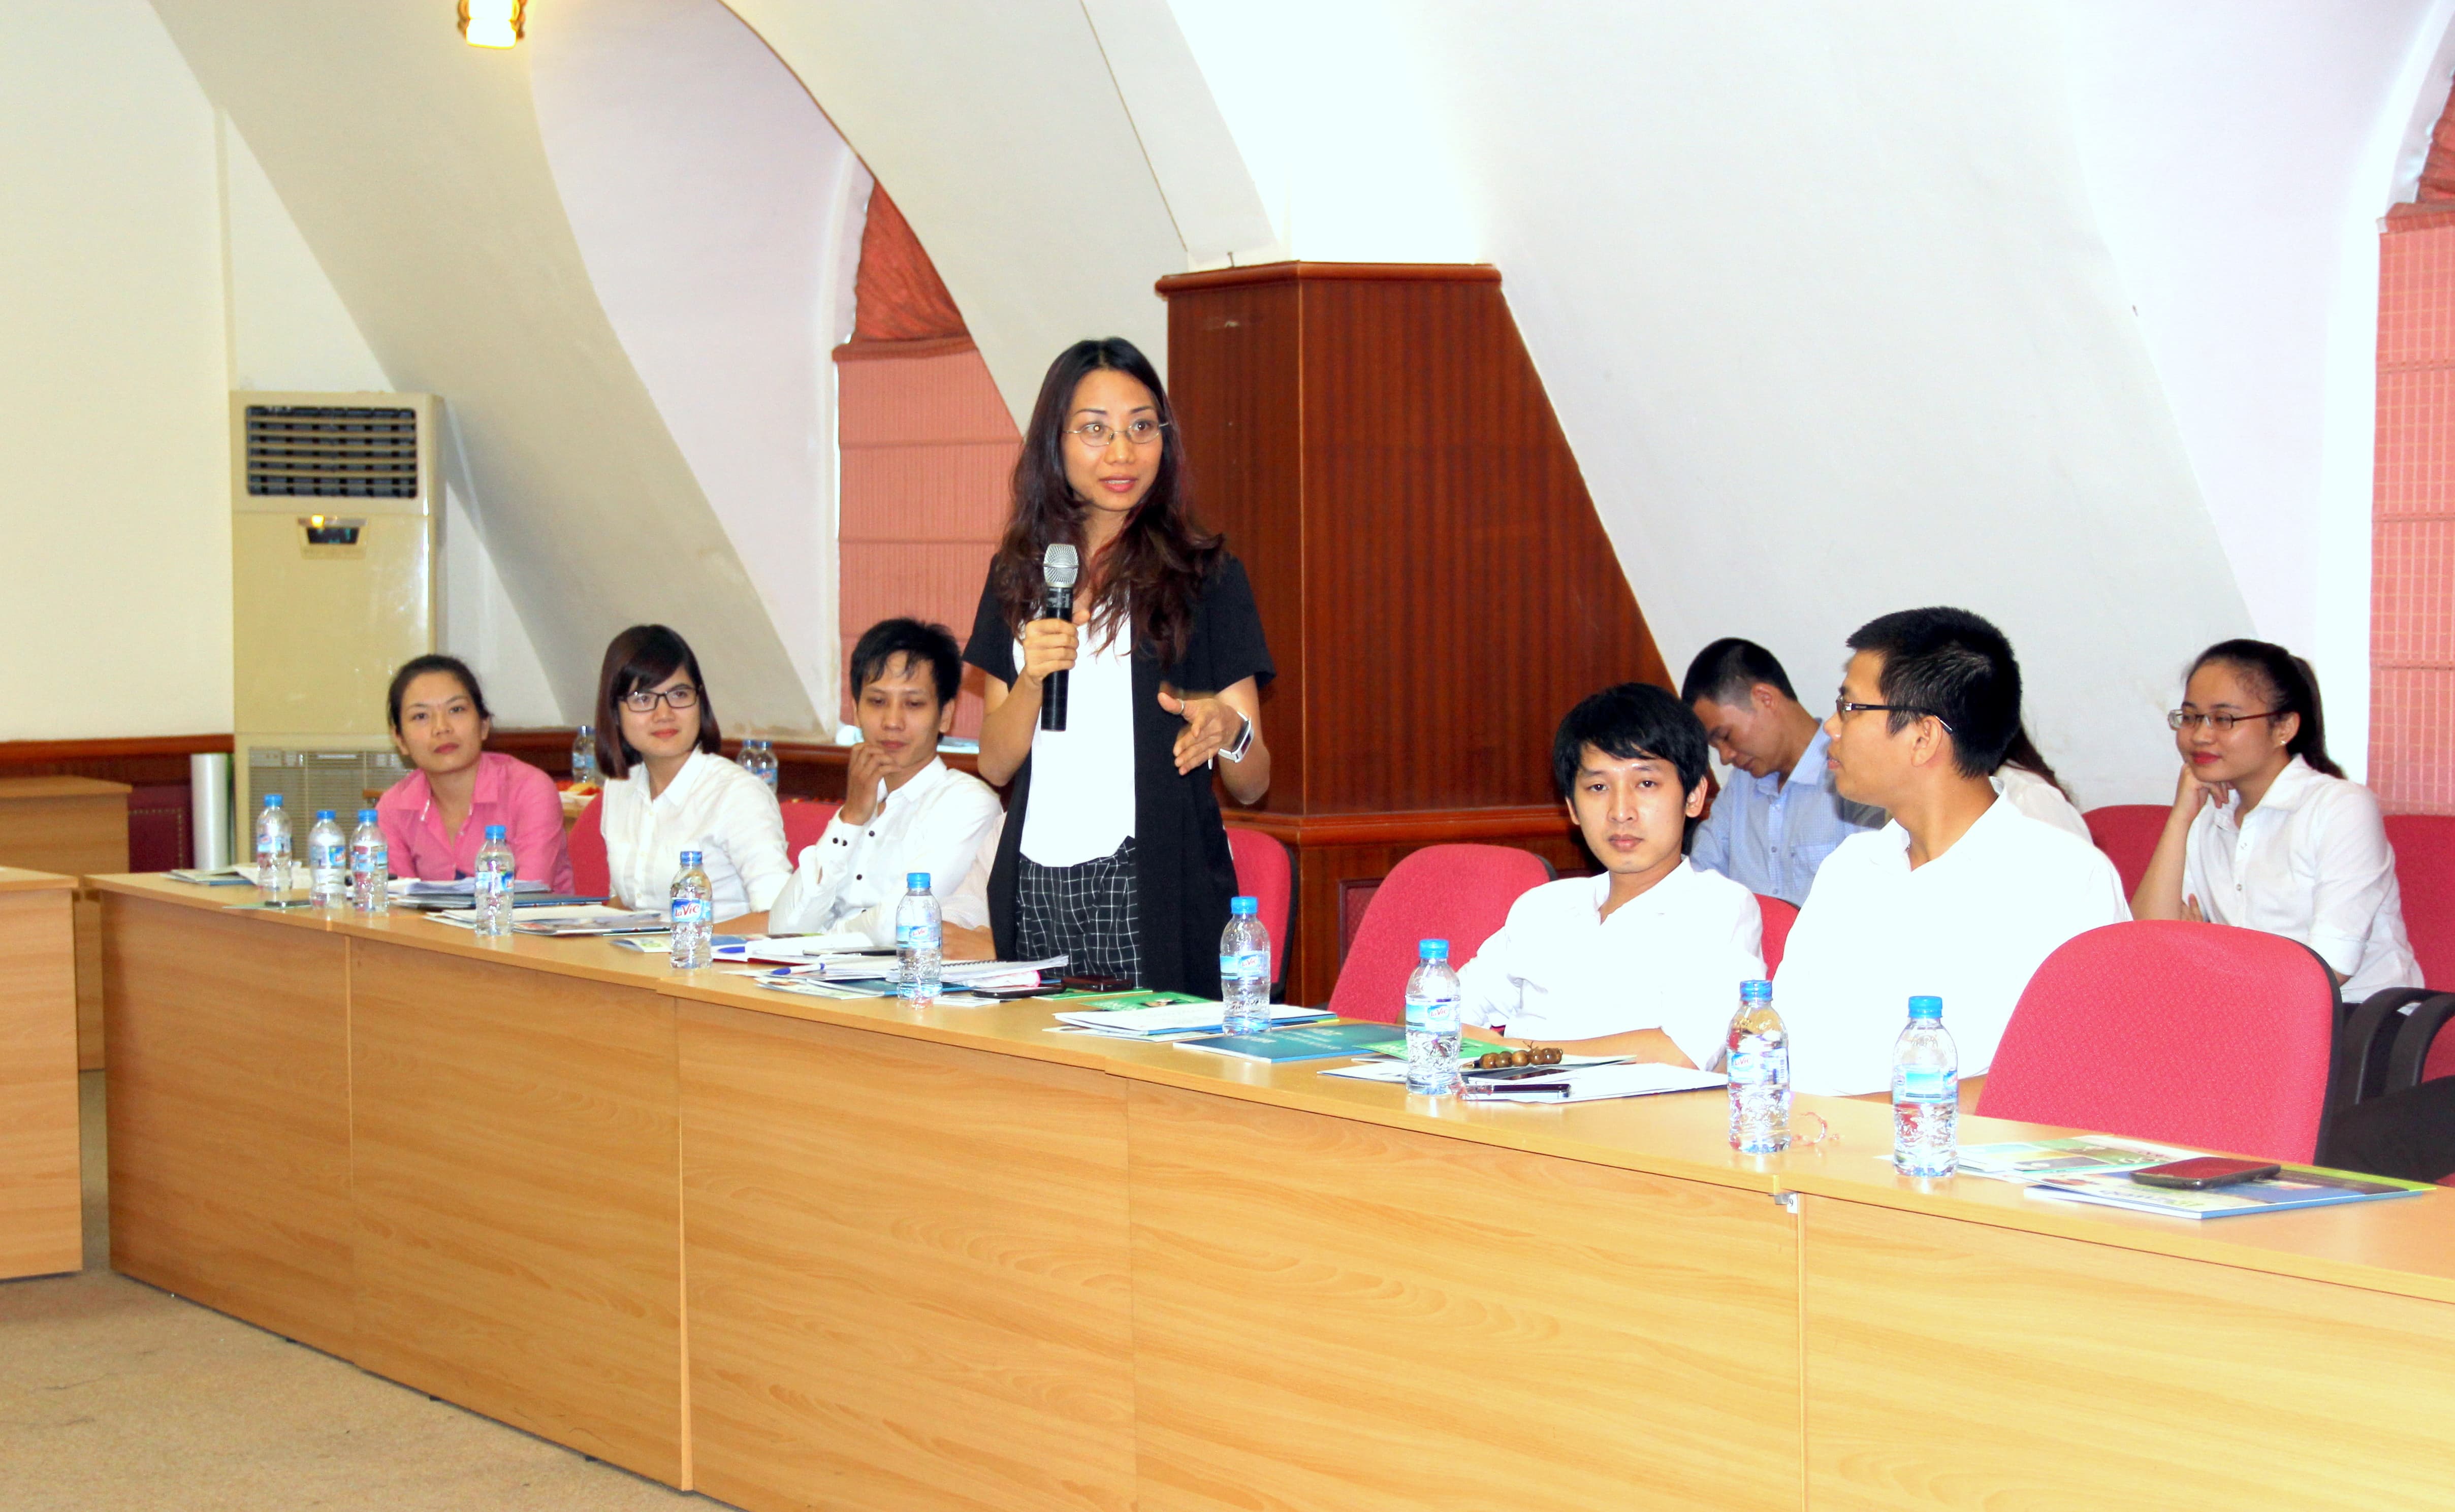 Bà Dương Thu Phương – Phó giám đốc Ibox đưa ra các giải pháp kinh doanh cho các hội viên